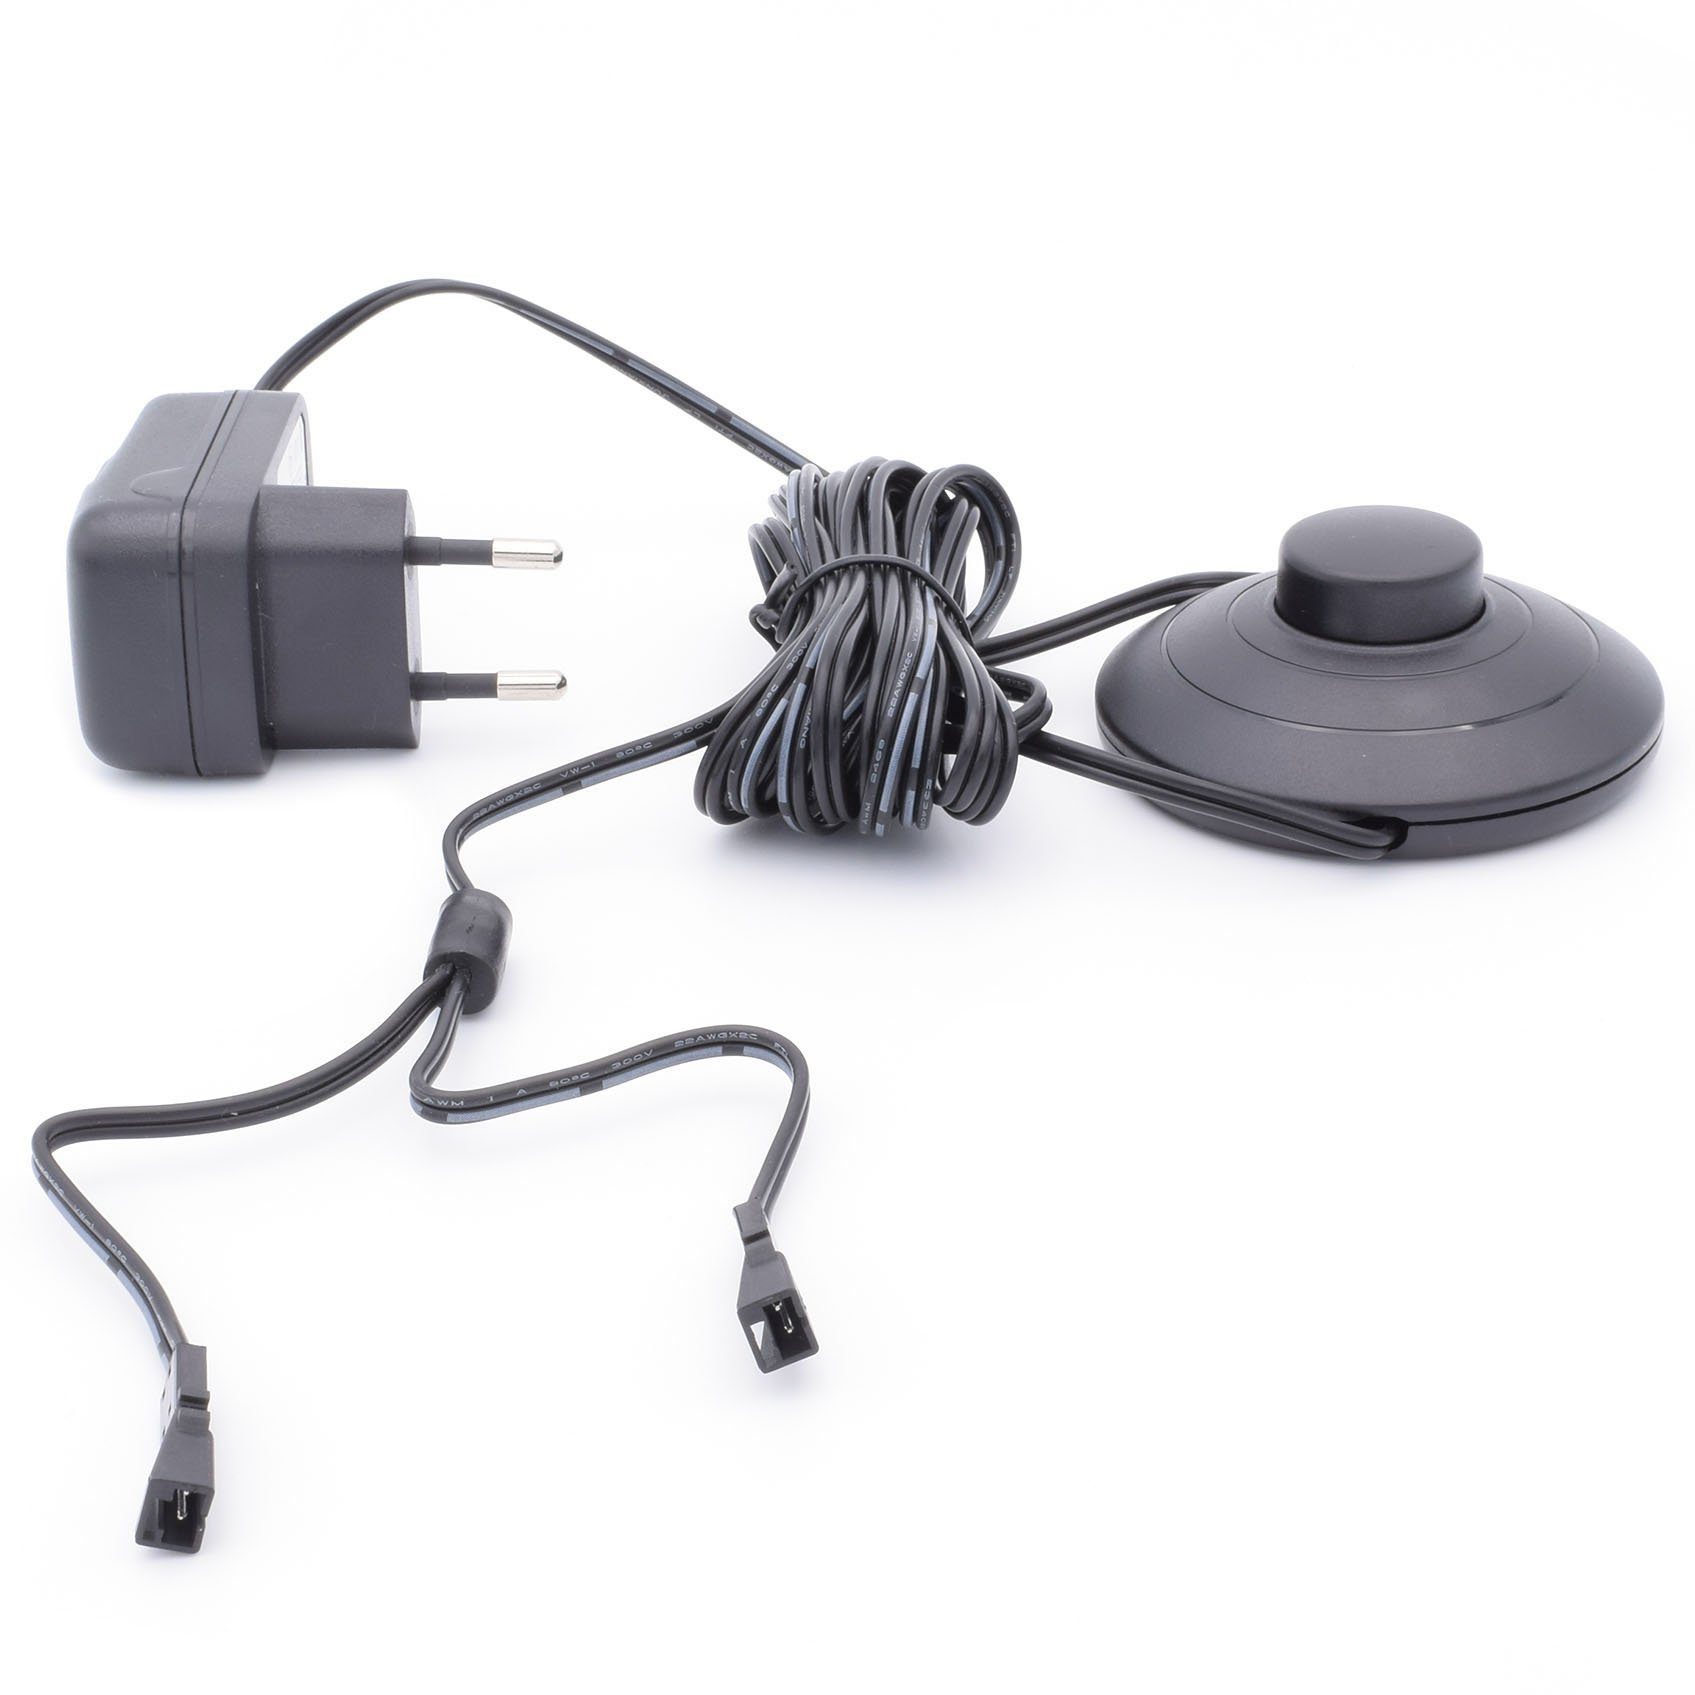 Yu Yang 6W Steckernetzteil mit Fußschalter LED Trafo (12V,6W,Trafo,SteckernetzteilmitFußschalter,2LEDKupplungen,Netzteil) | LED-Trafos